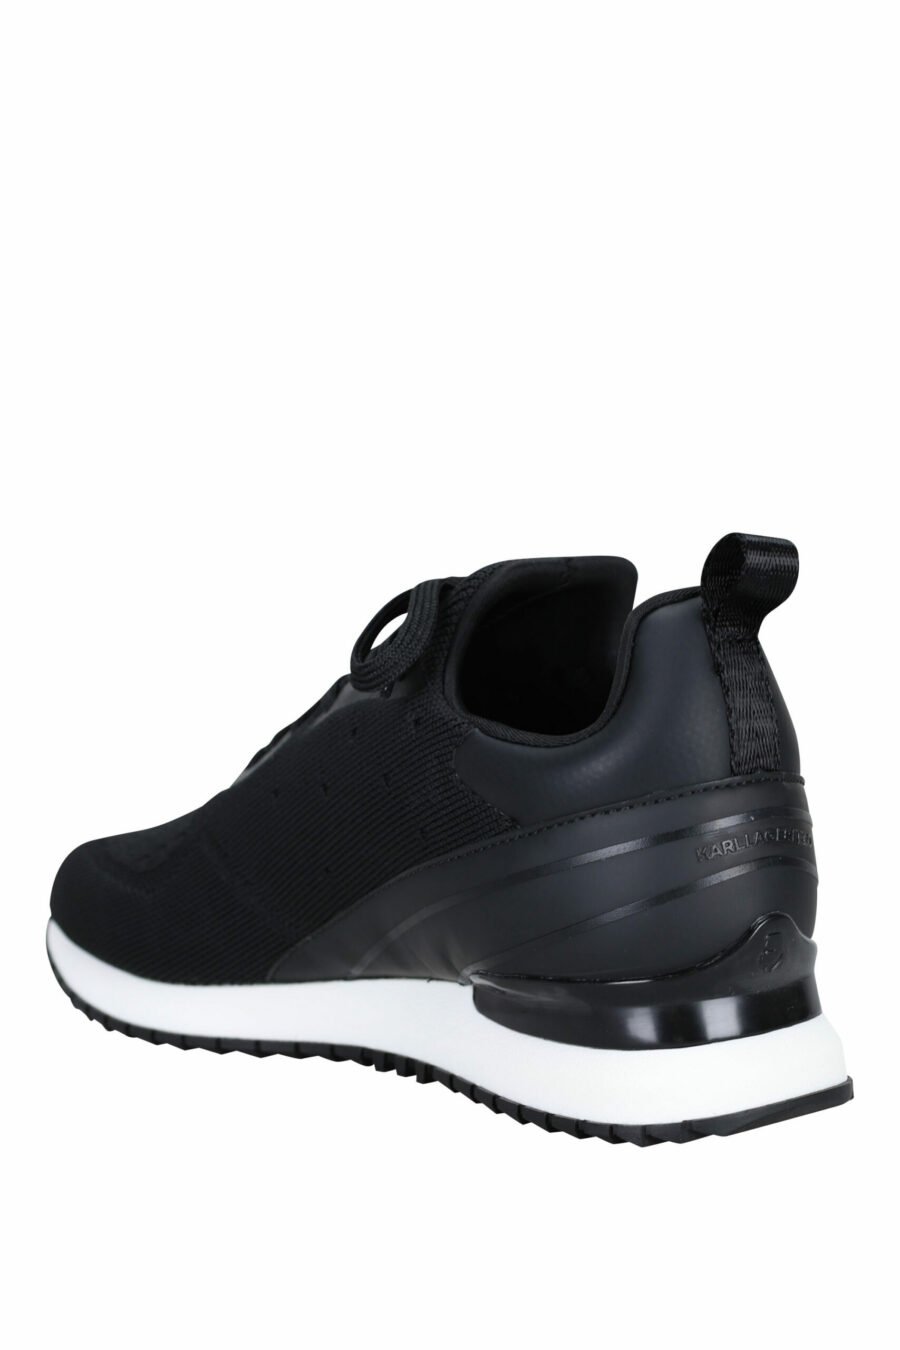 Chaussures "velocitor" noires avec logo "rue st guillaume" blanc - 5059529326370 3 échelles